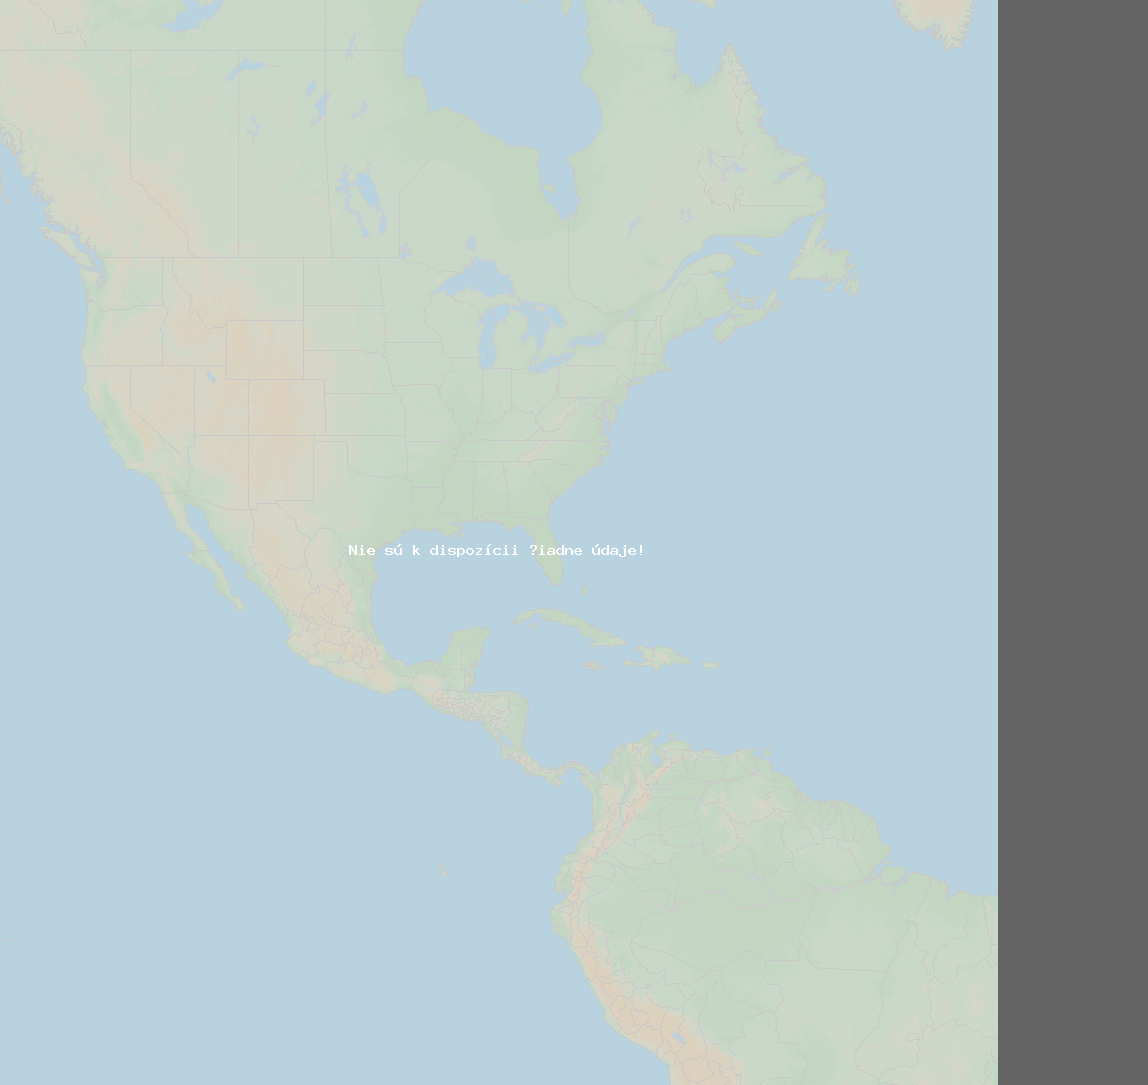 Pomer bleskov (Stanica Baie-Comeau QC) North America 2019 September